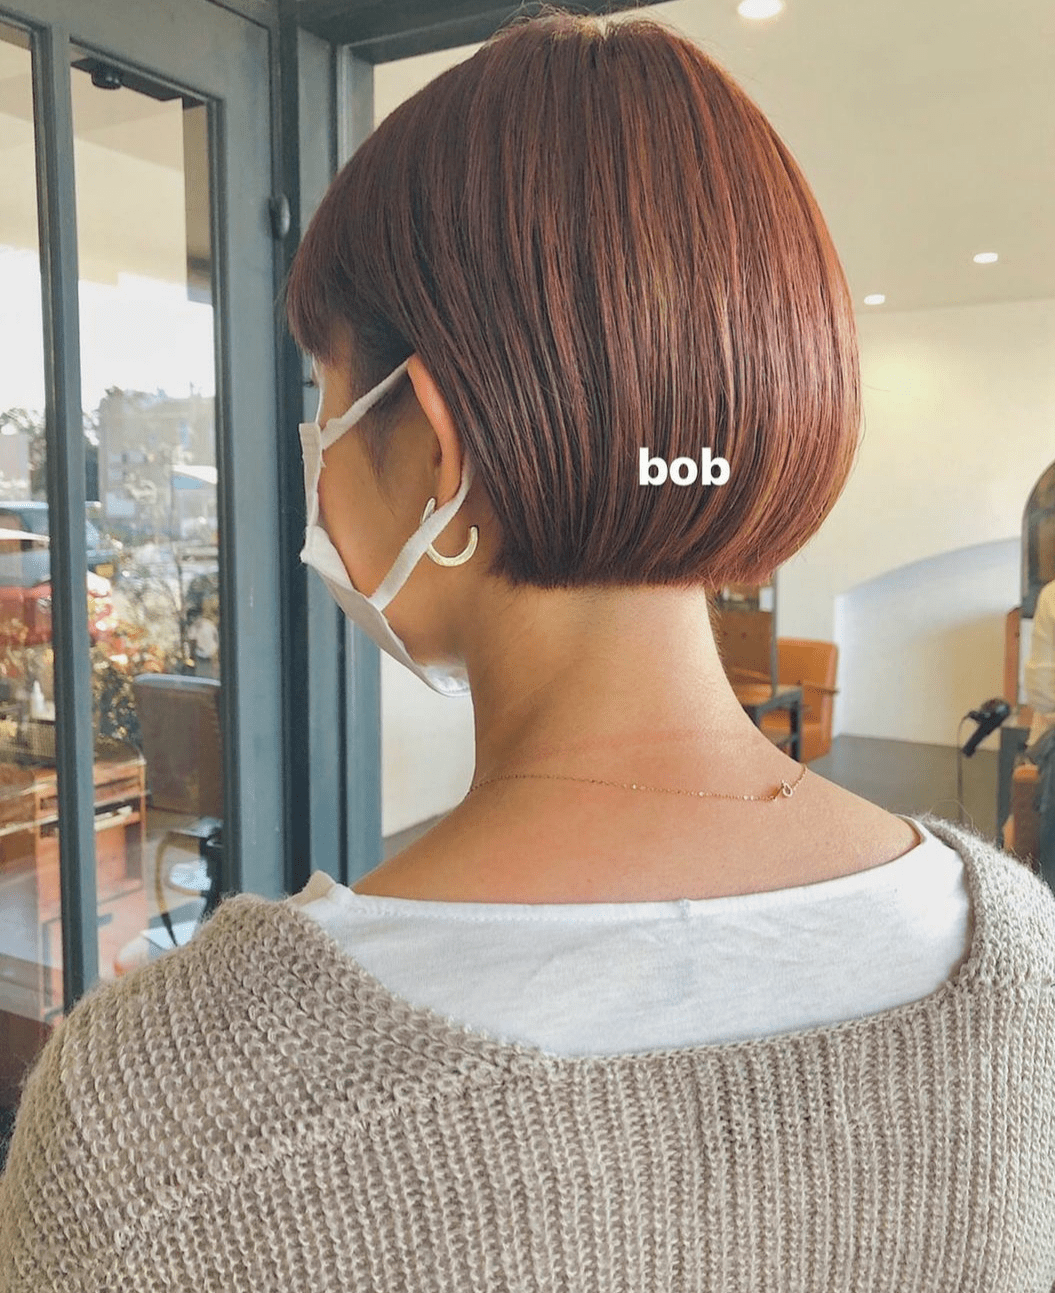 "bob"